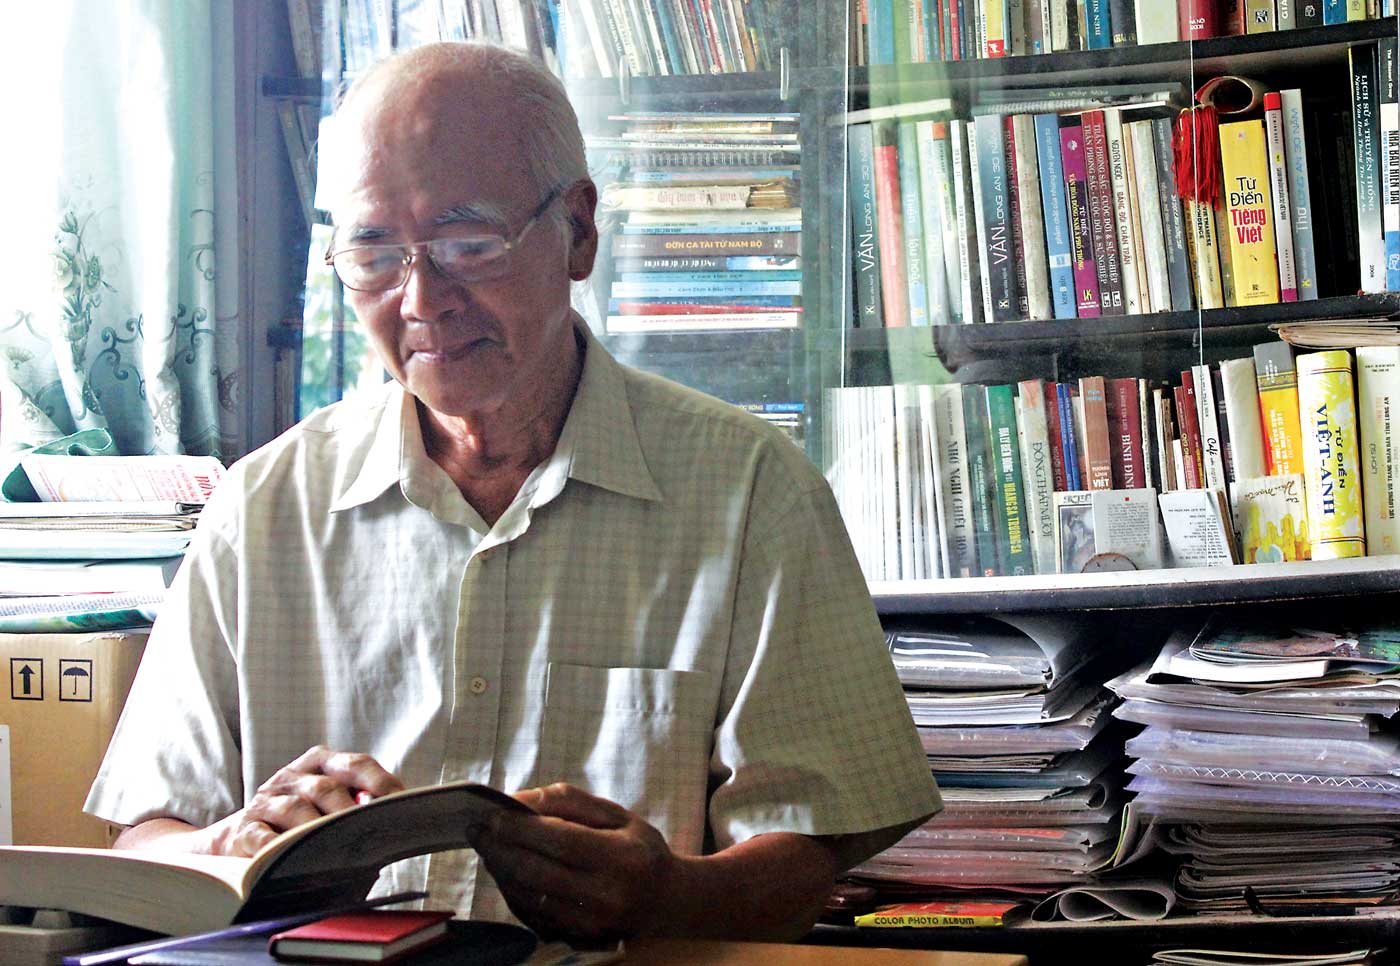 Giờ đây, khi về hưu, nhà báo Quang Hảo vẫn không từ bỏ được thói quen đọc sách, báo và viết mỗi ngày